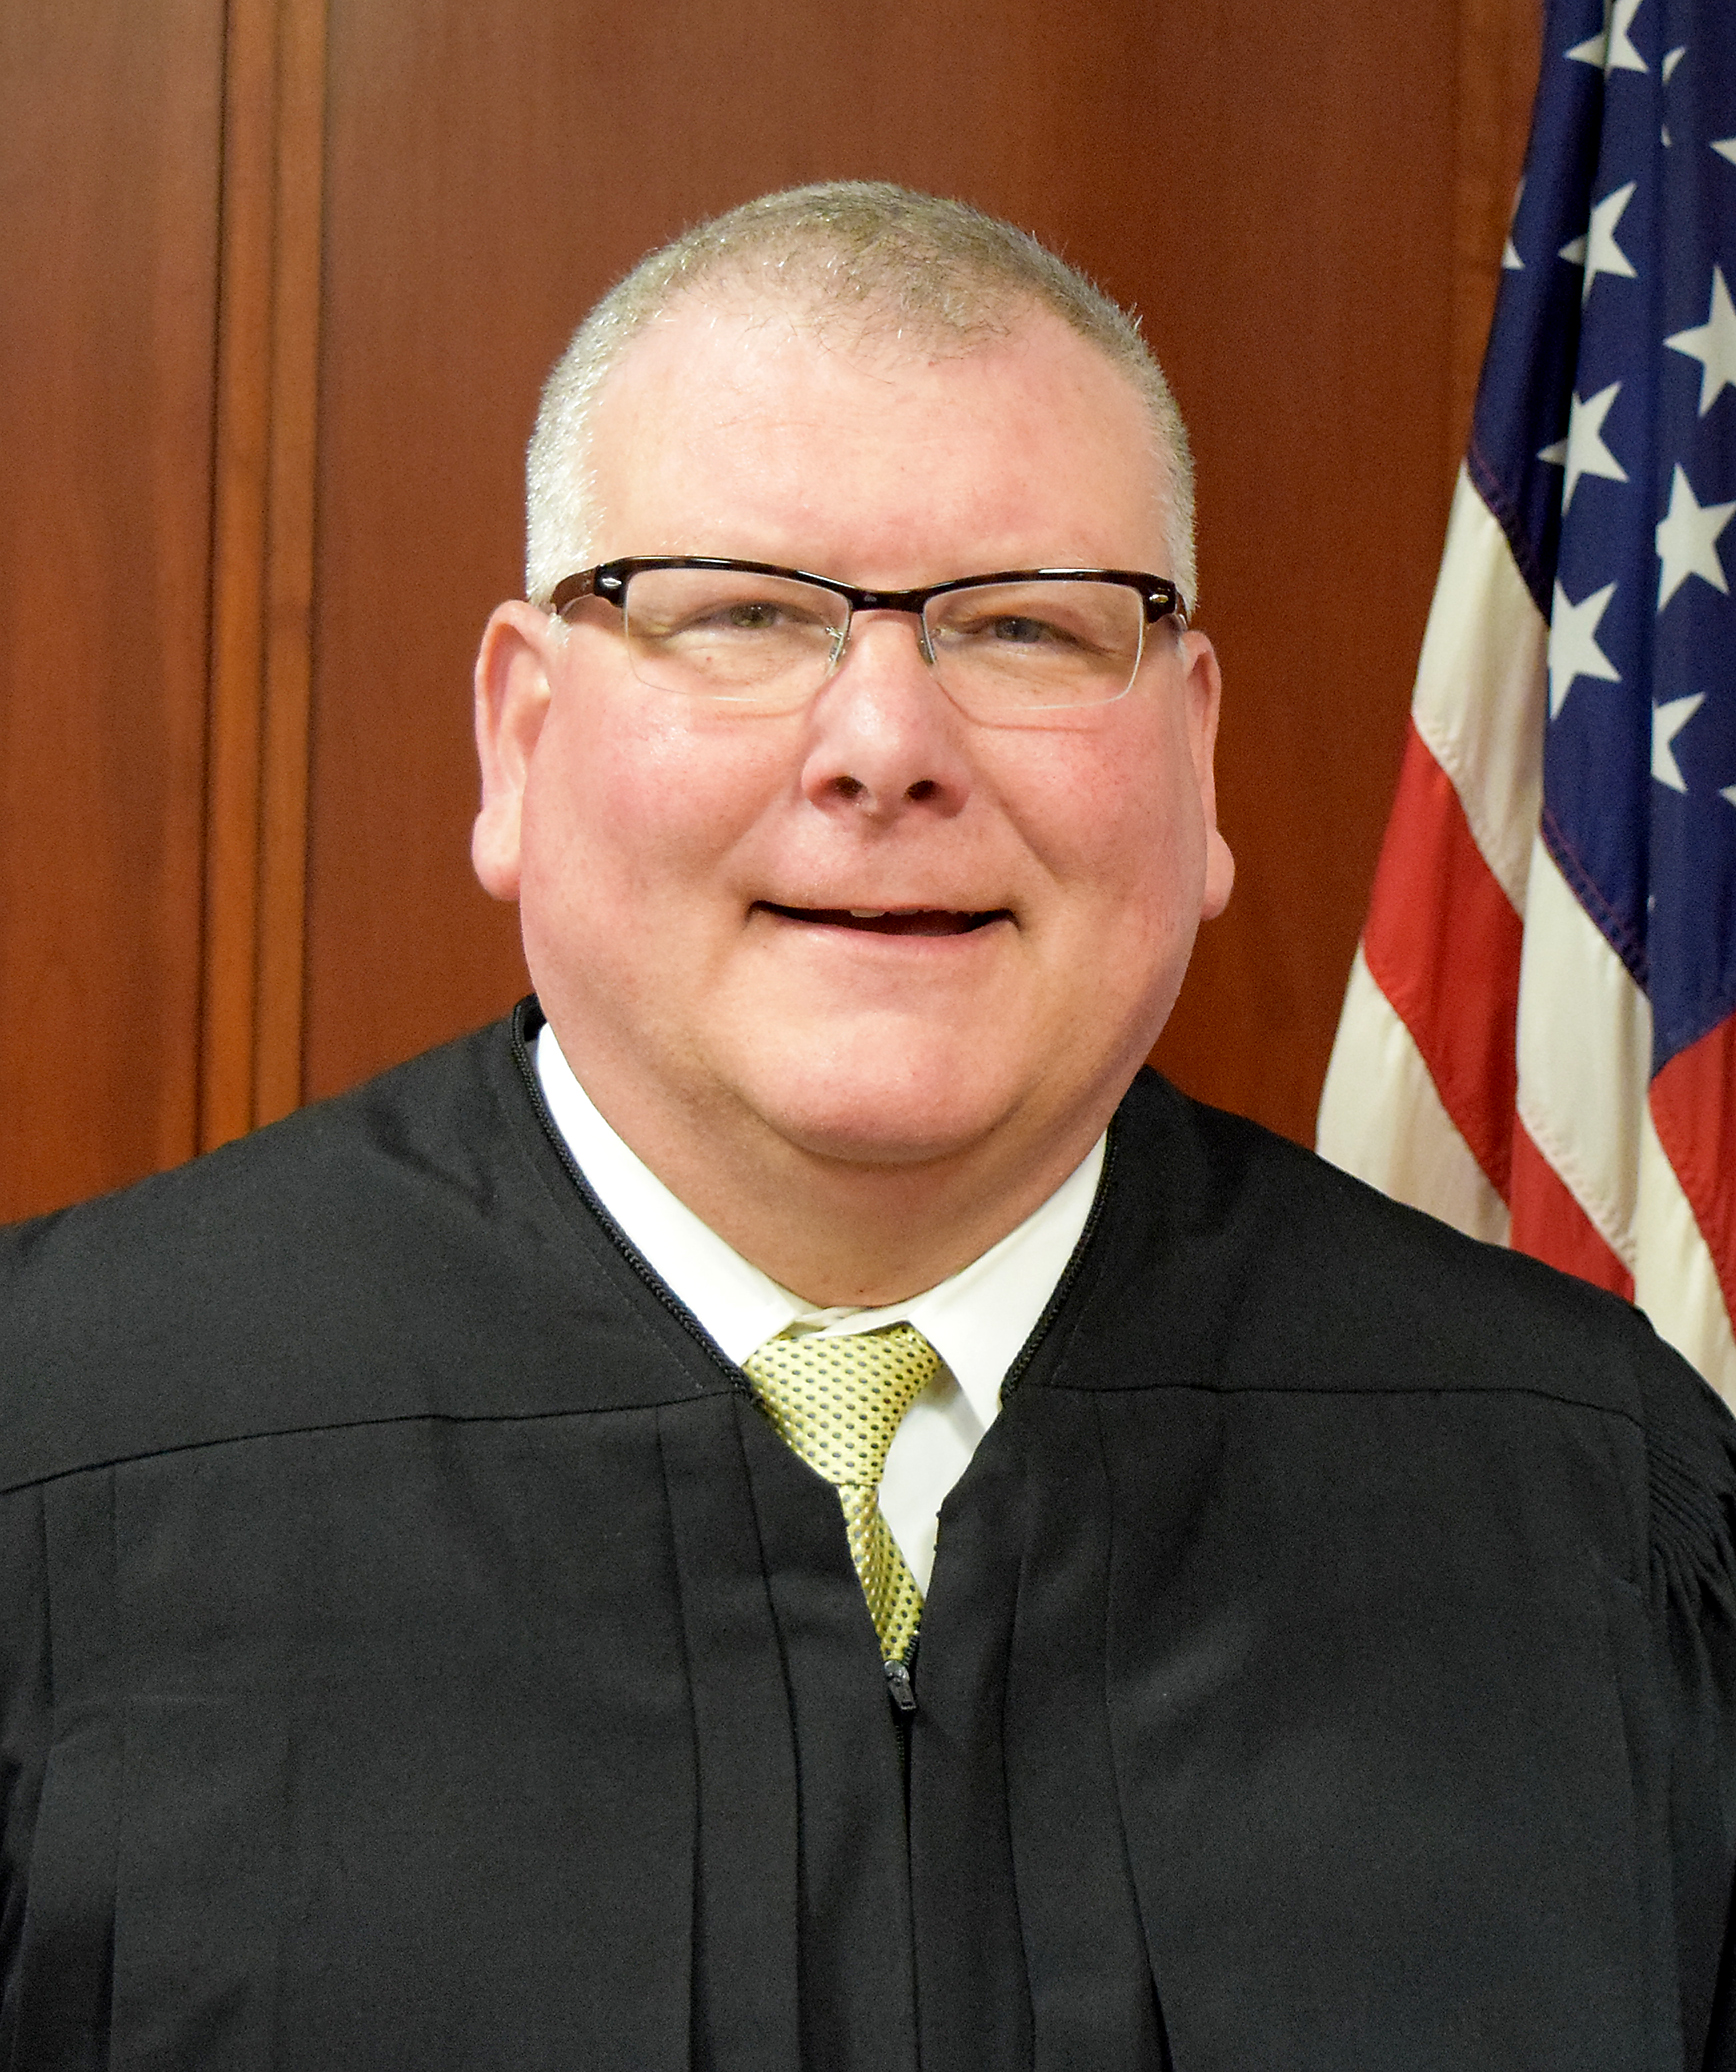 Judge Cook